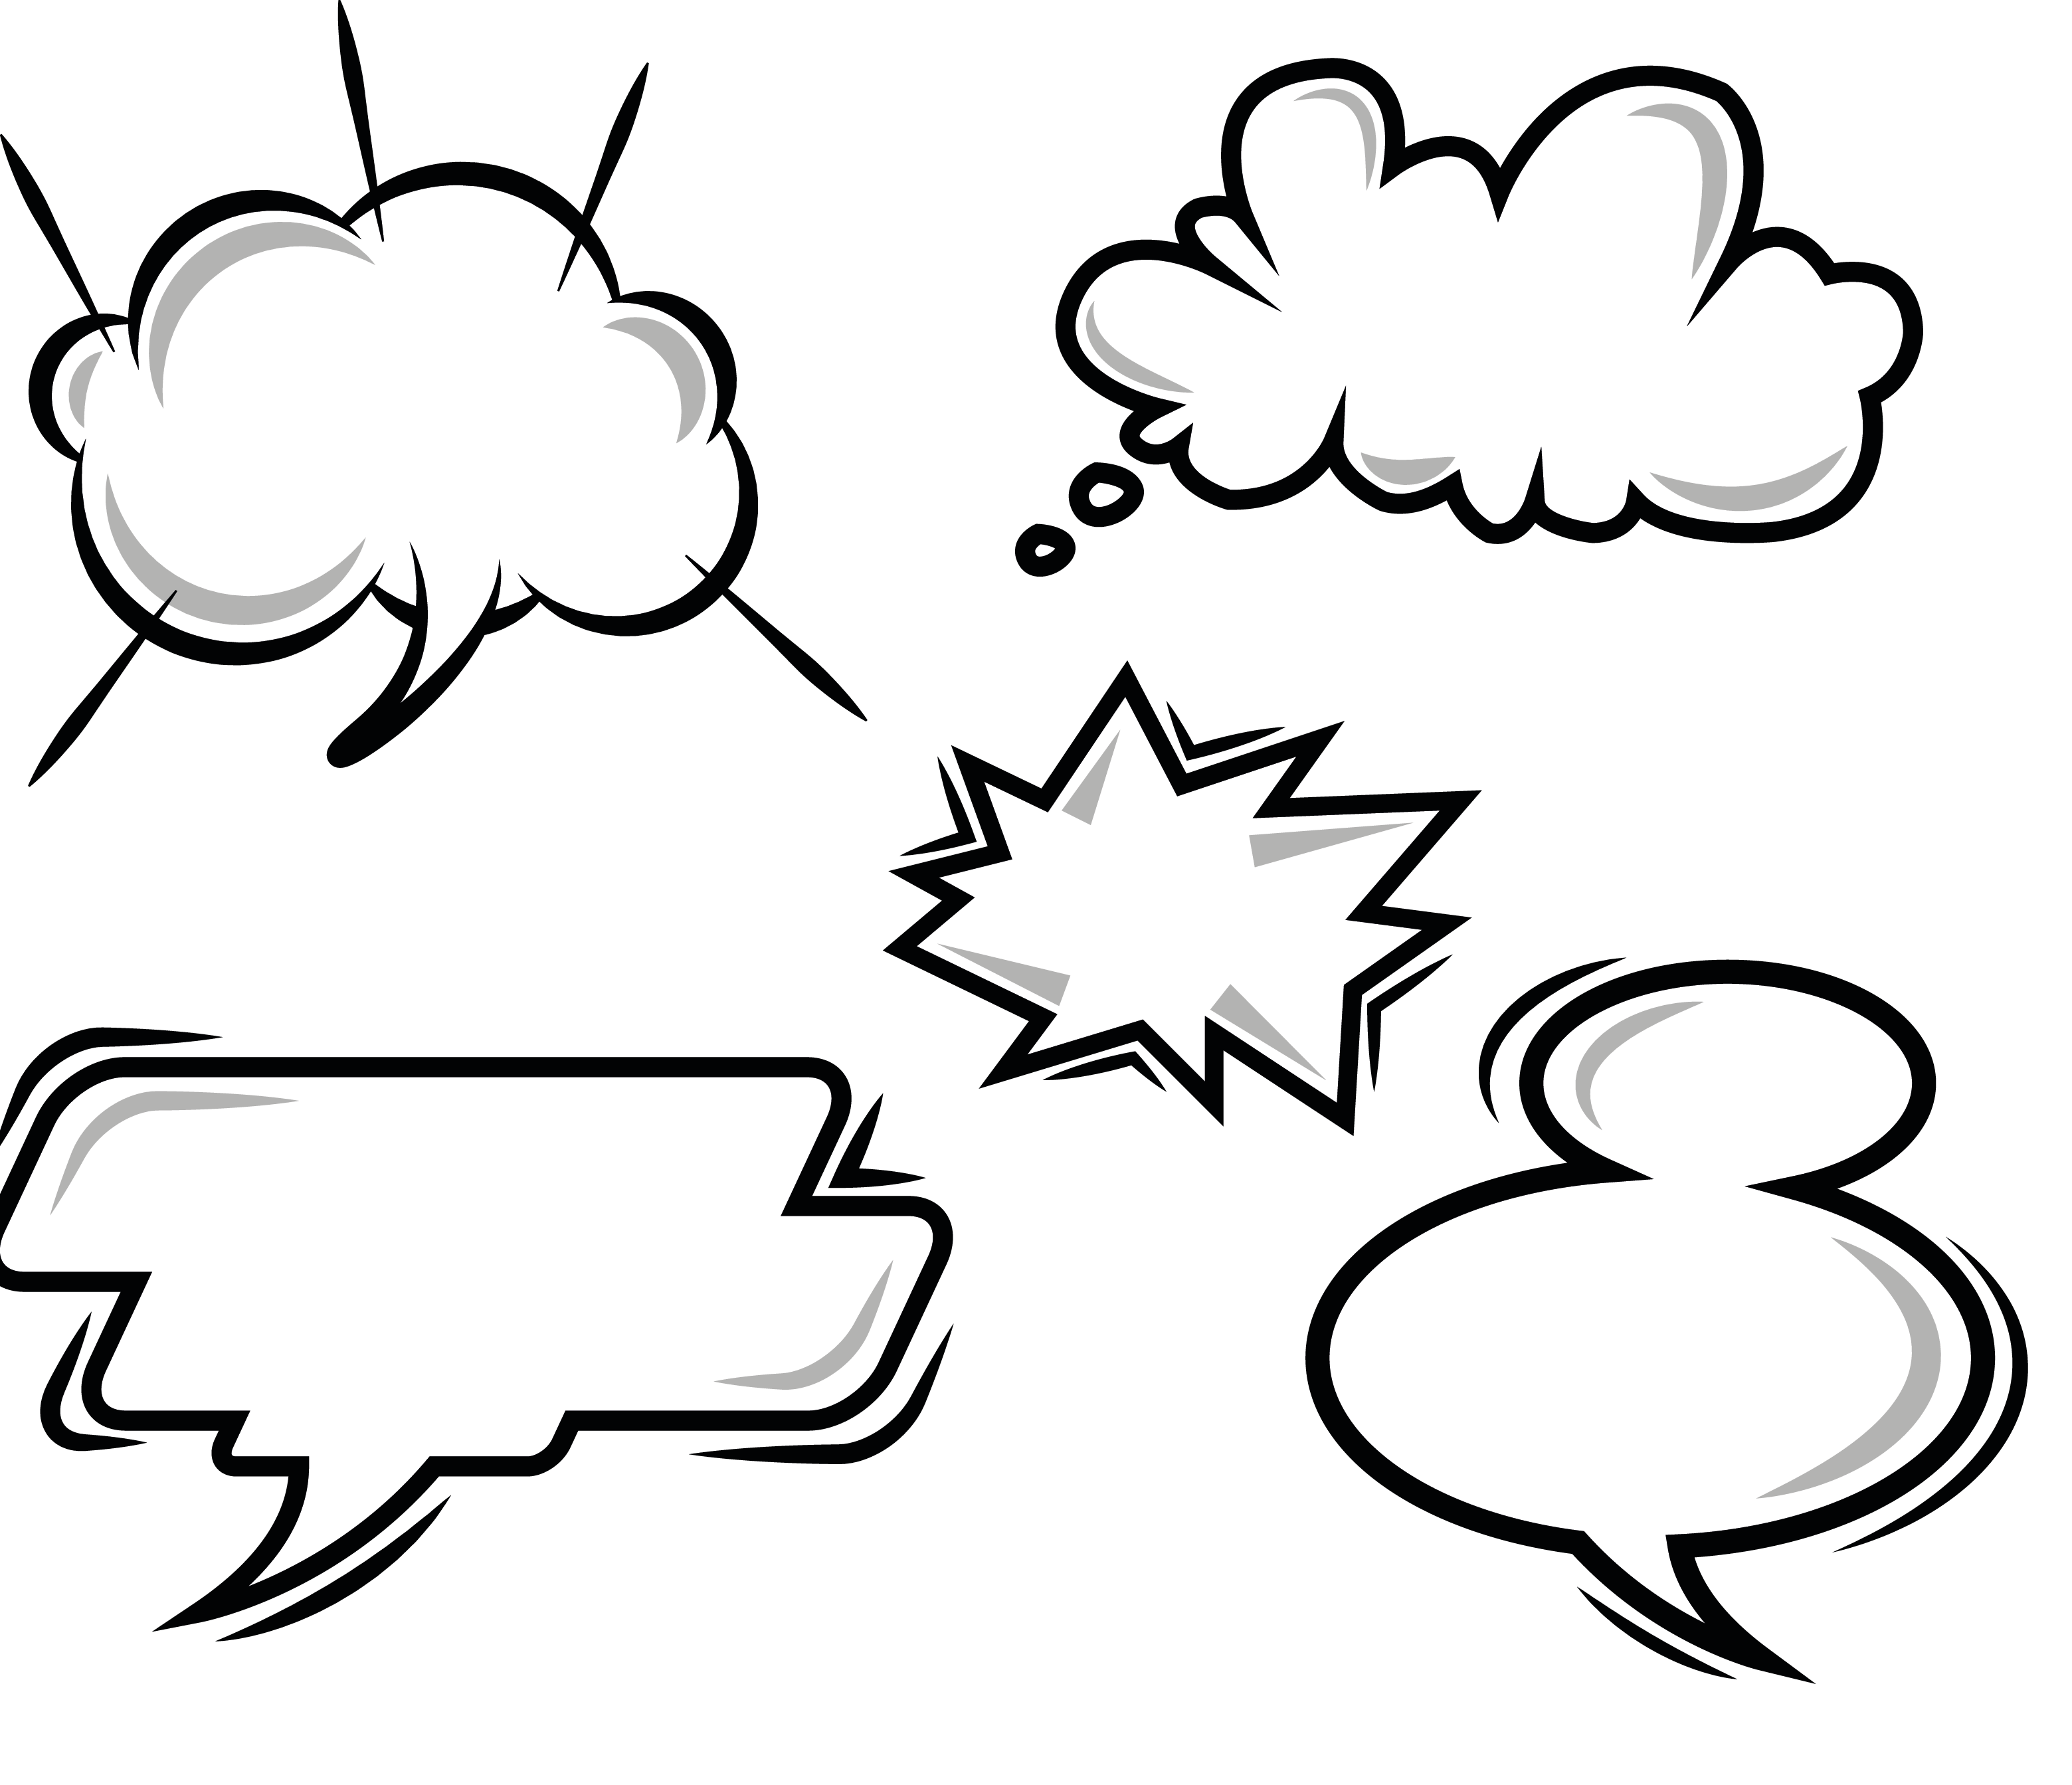 دانلود وکتور ابر و حباب گفتگو به صورت رایگان